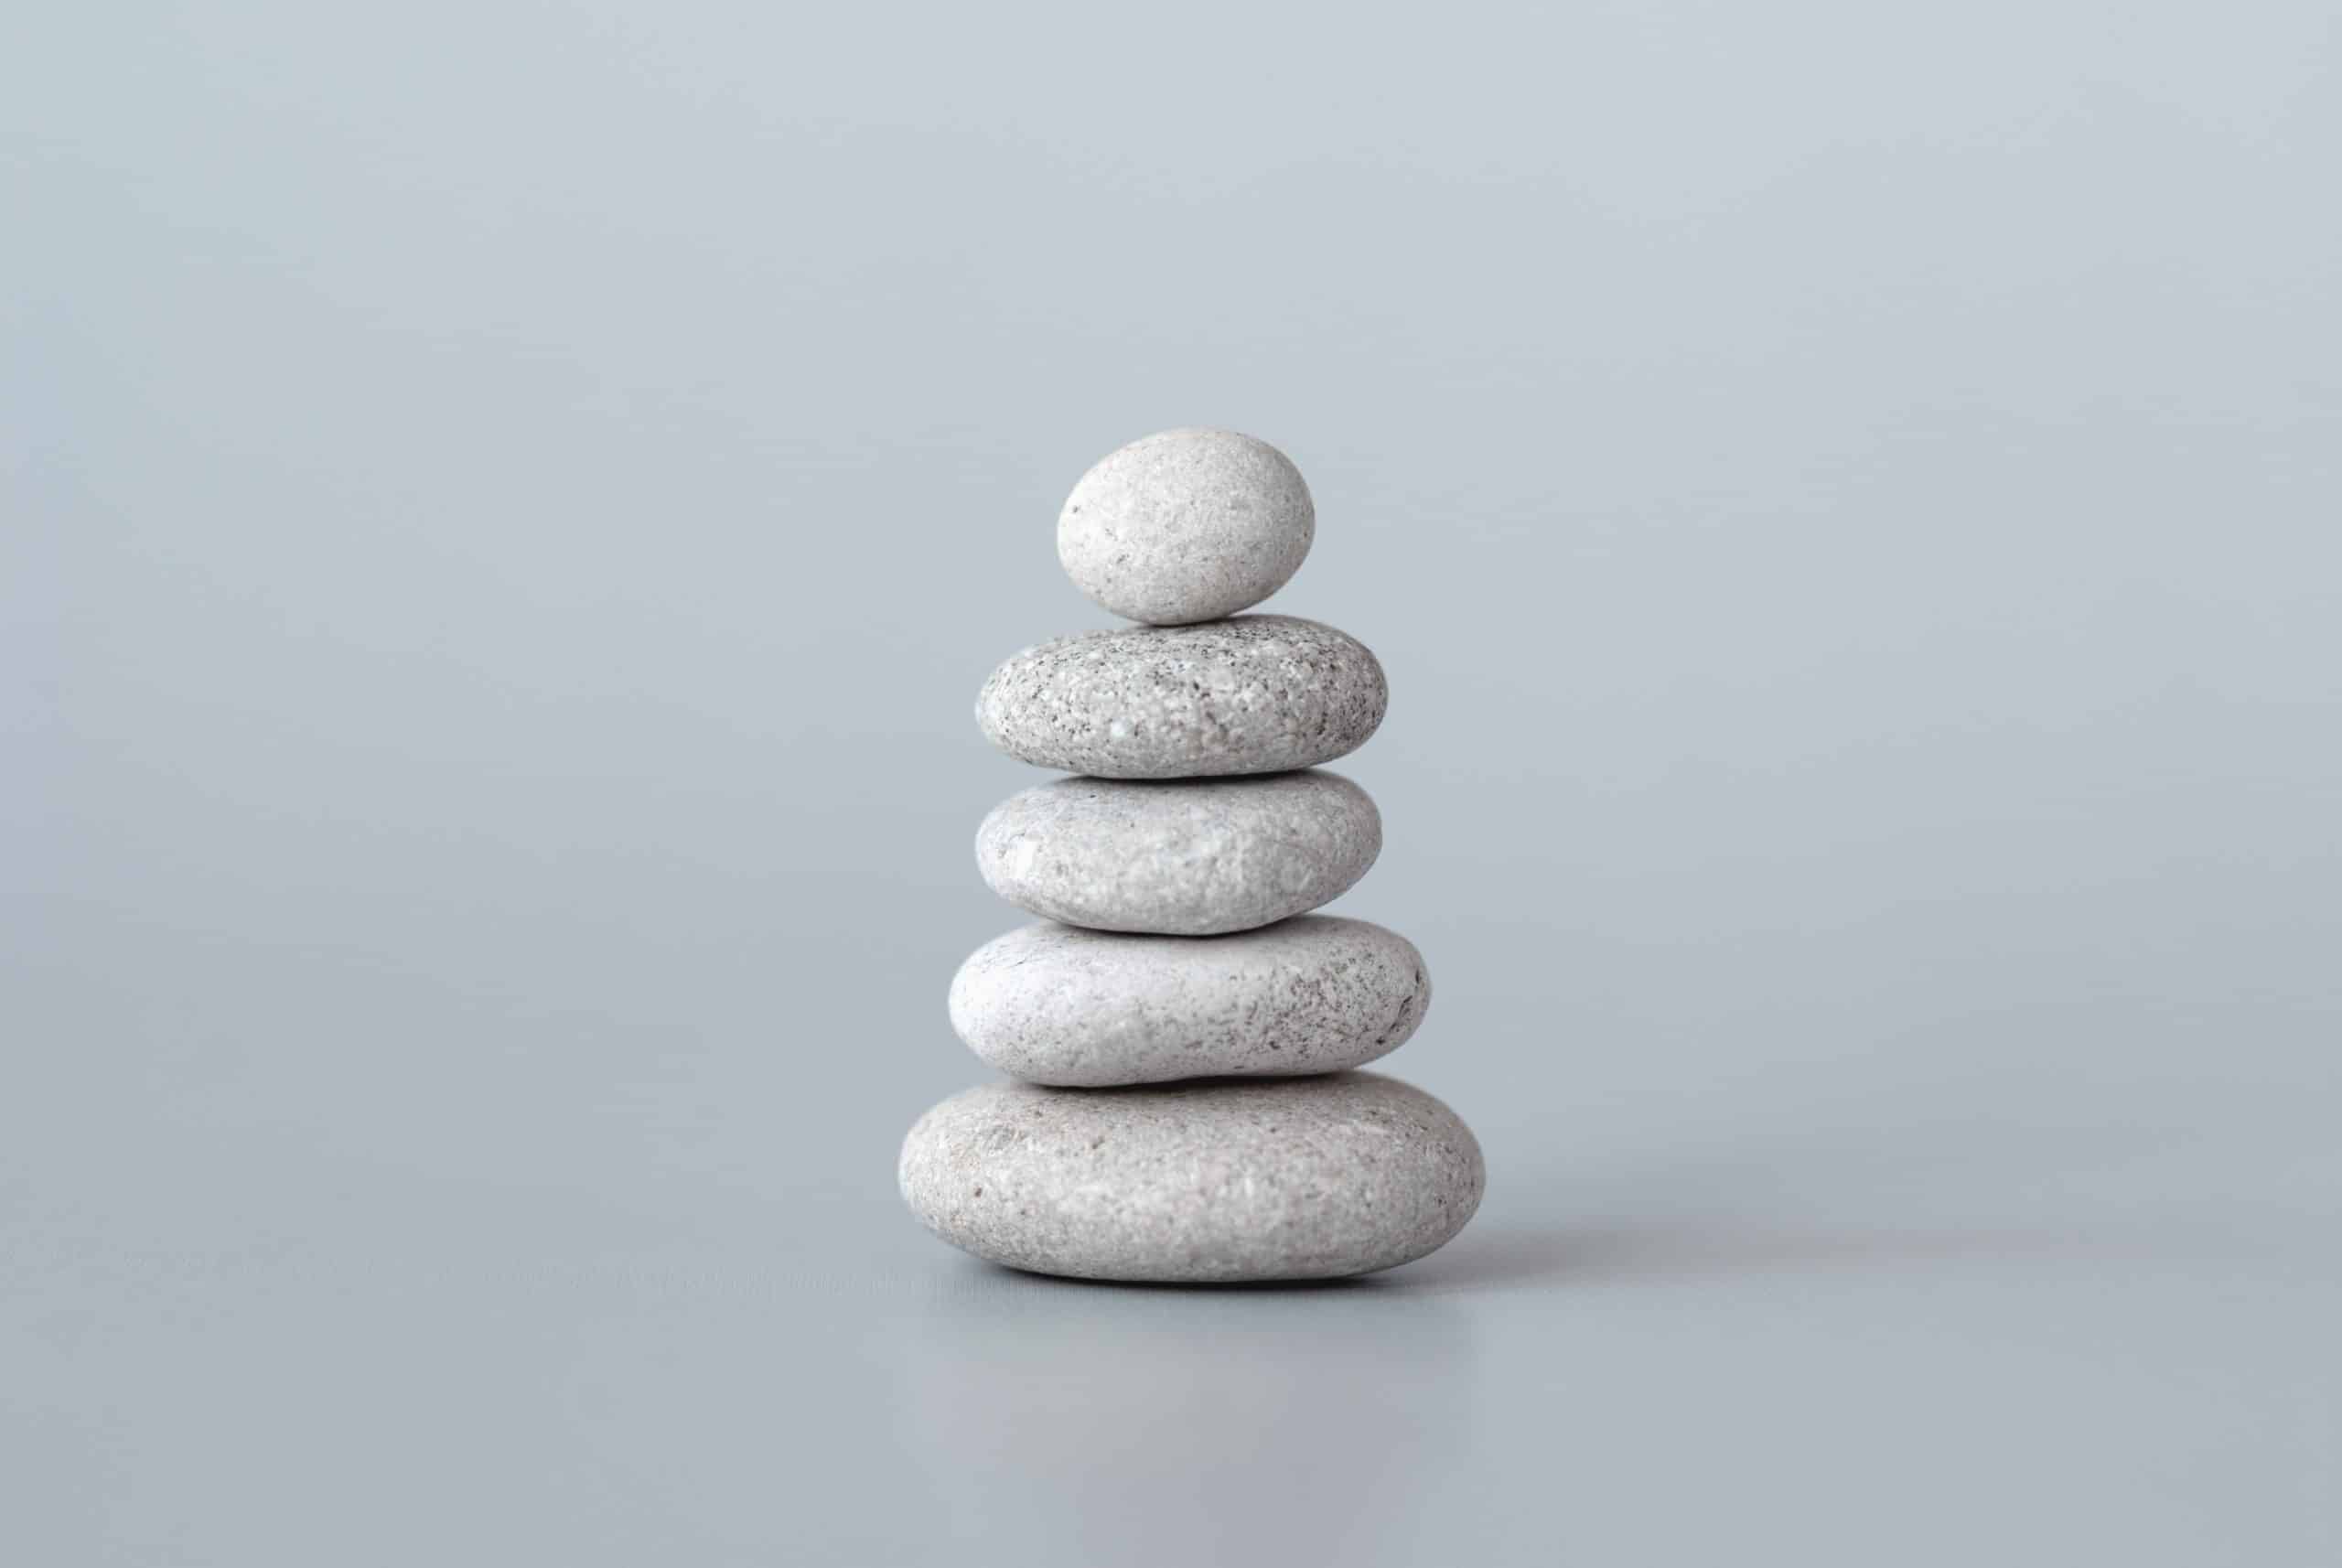 Les meilleurs conseils pour une vie plus équilibrée et épanouissante sur https://sayaka-shoji.com